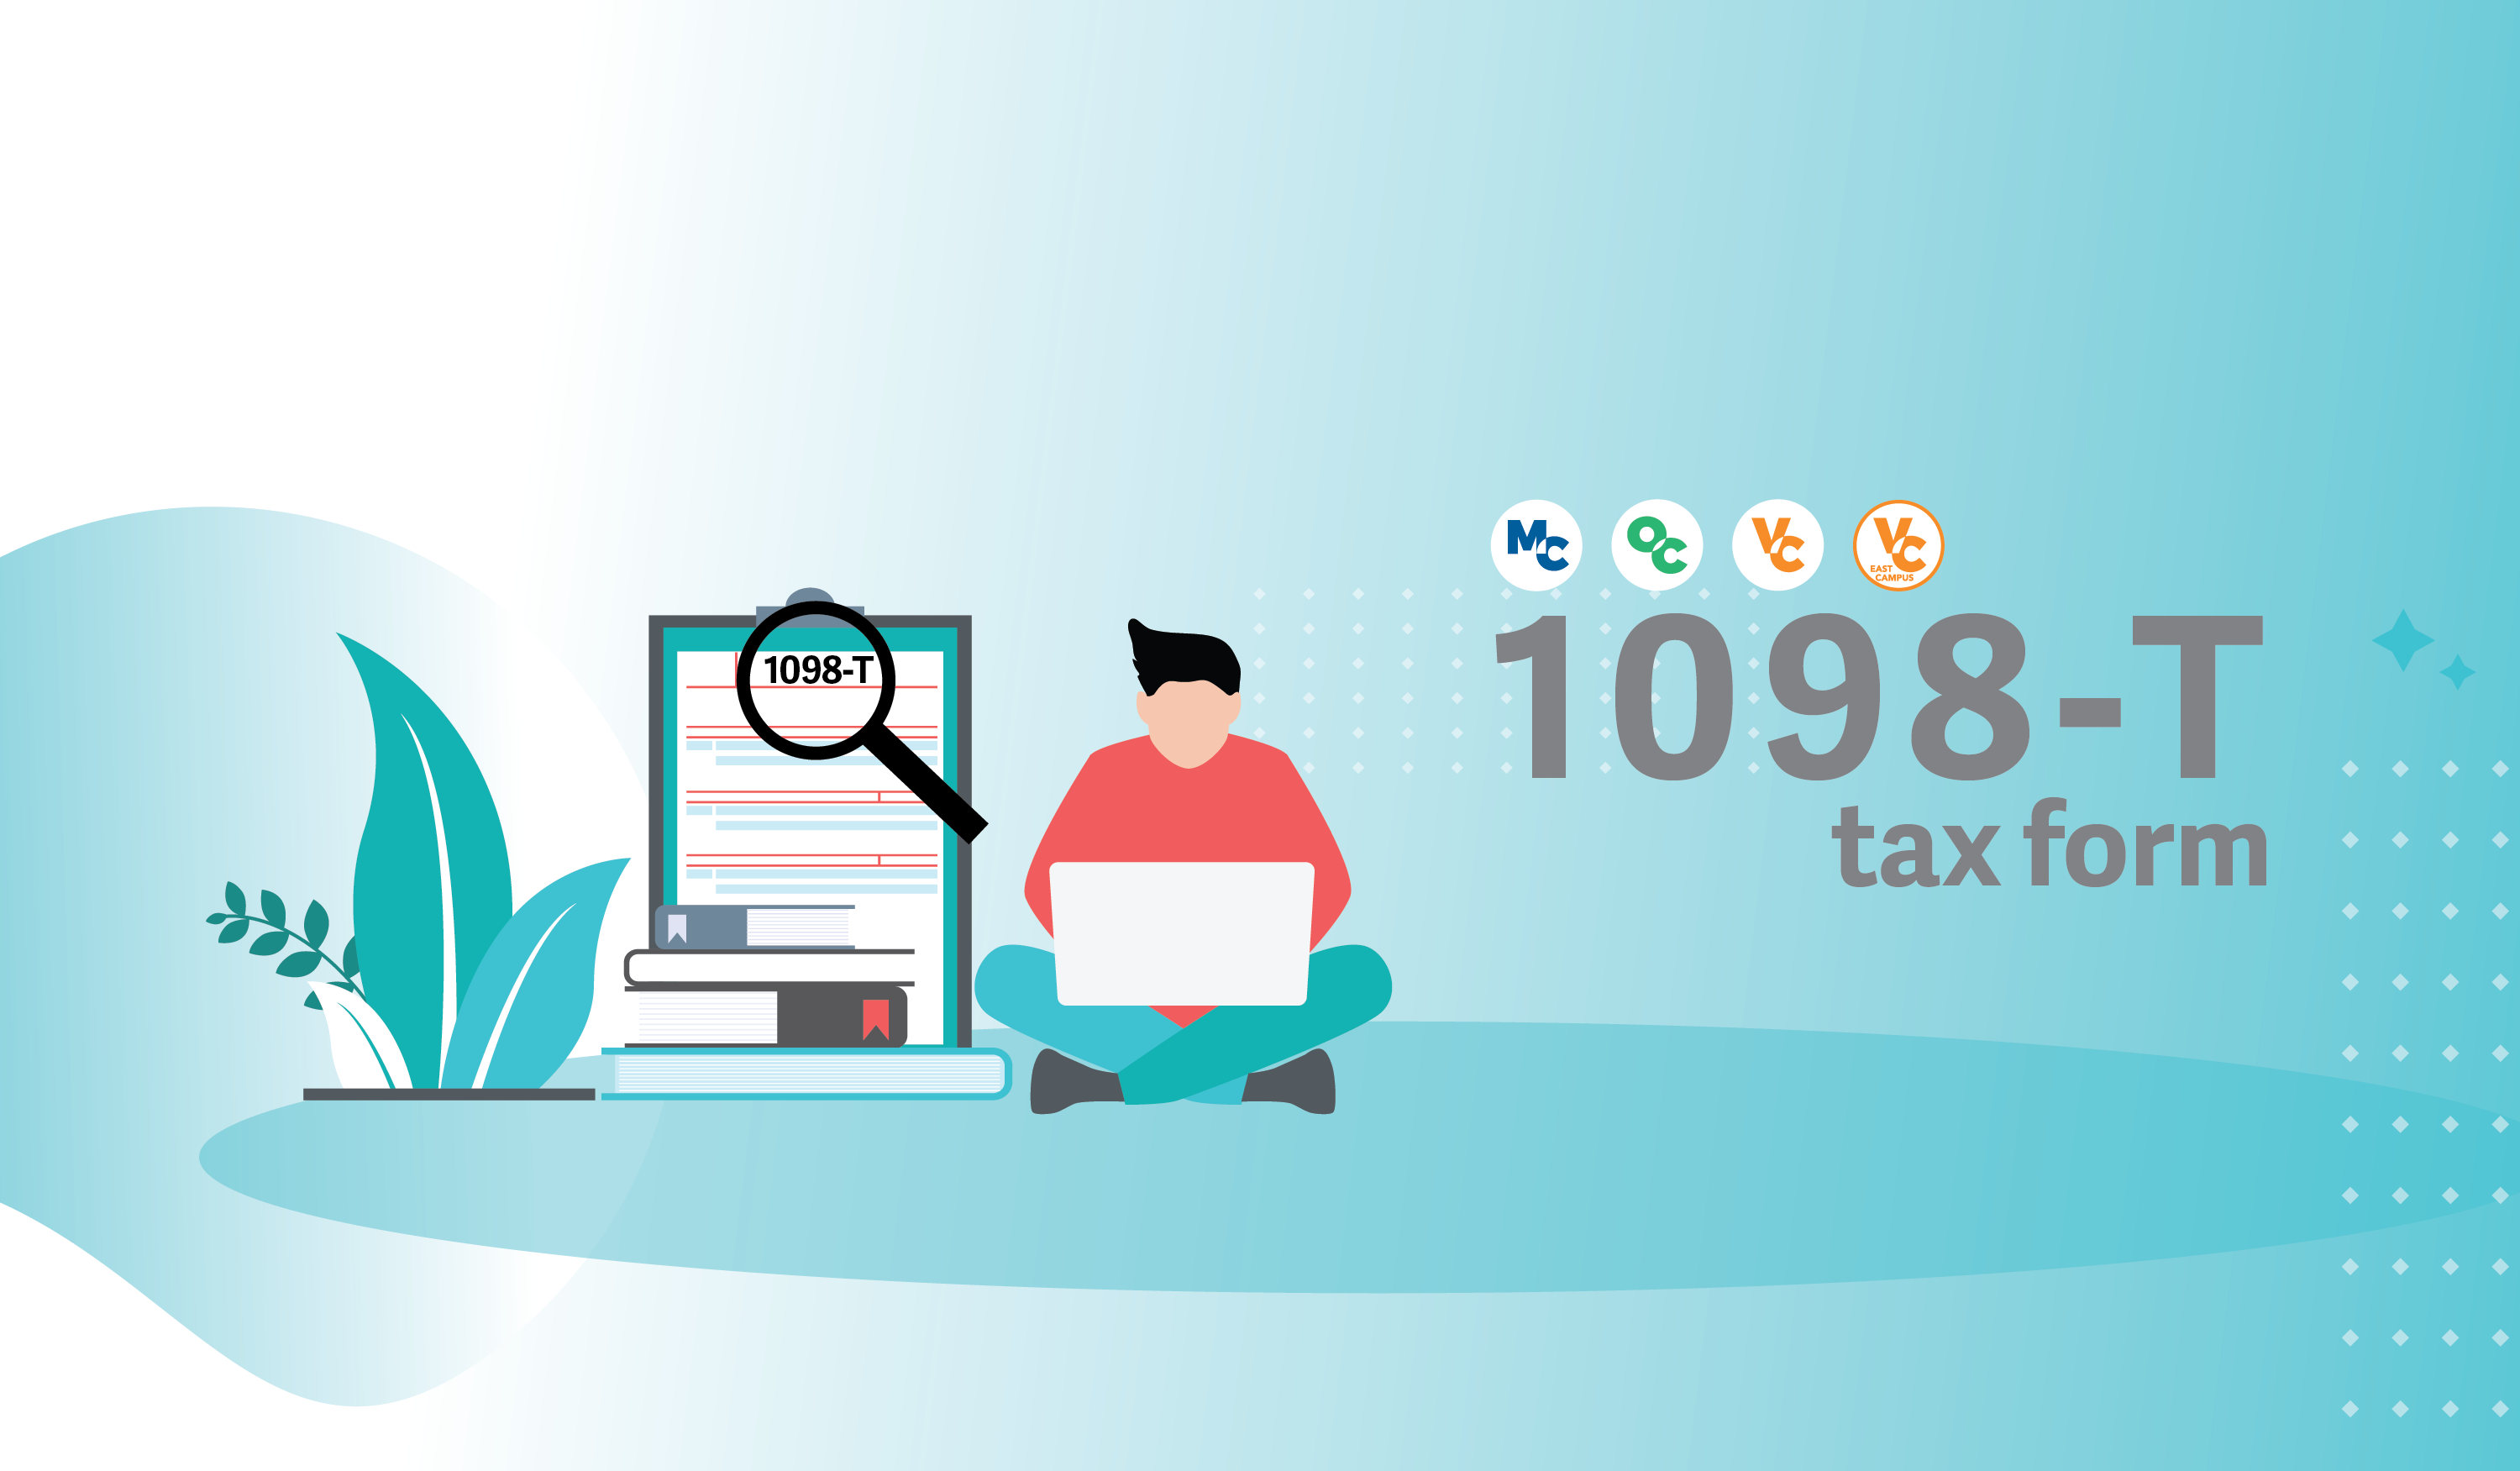 1098-T tax form